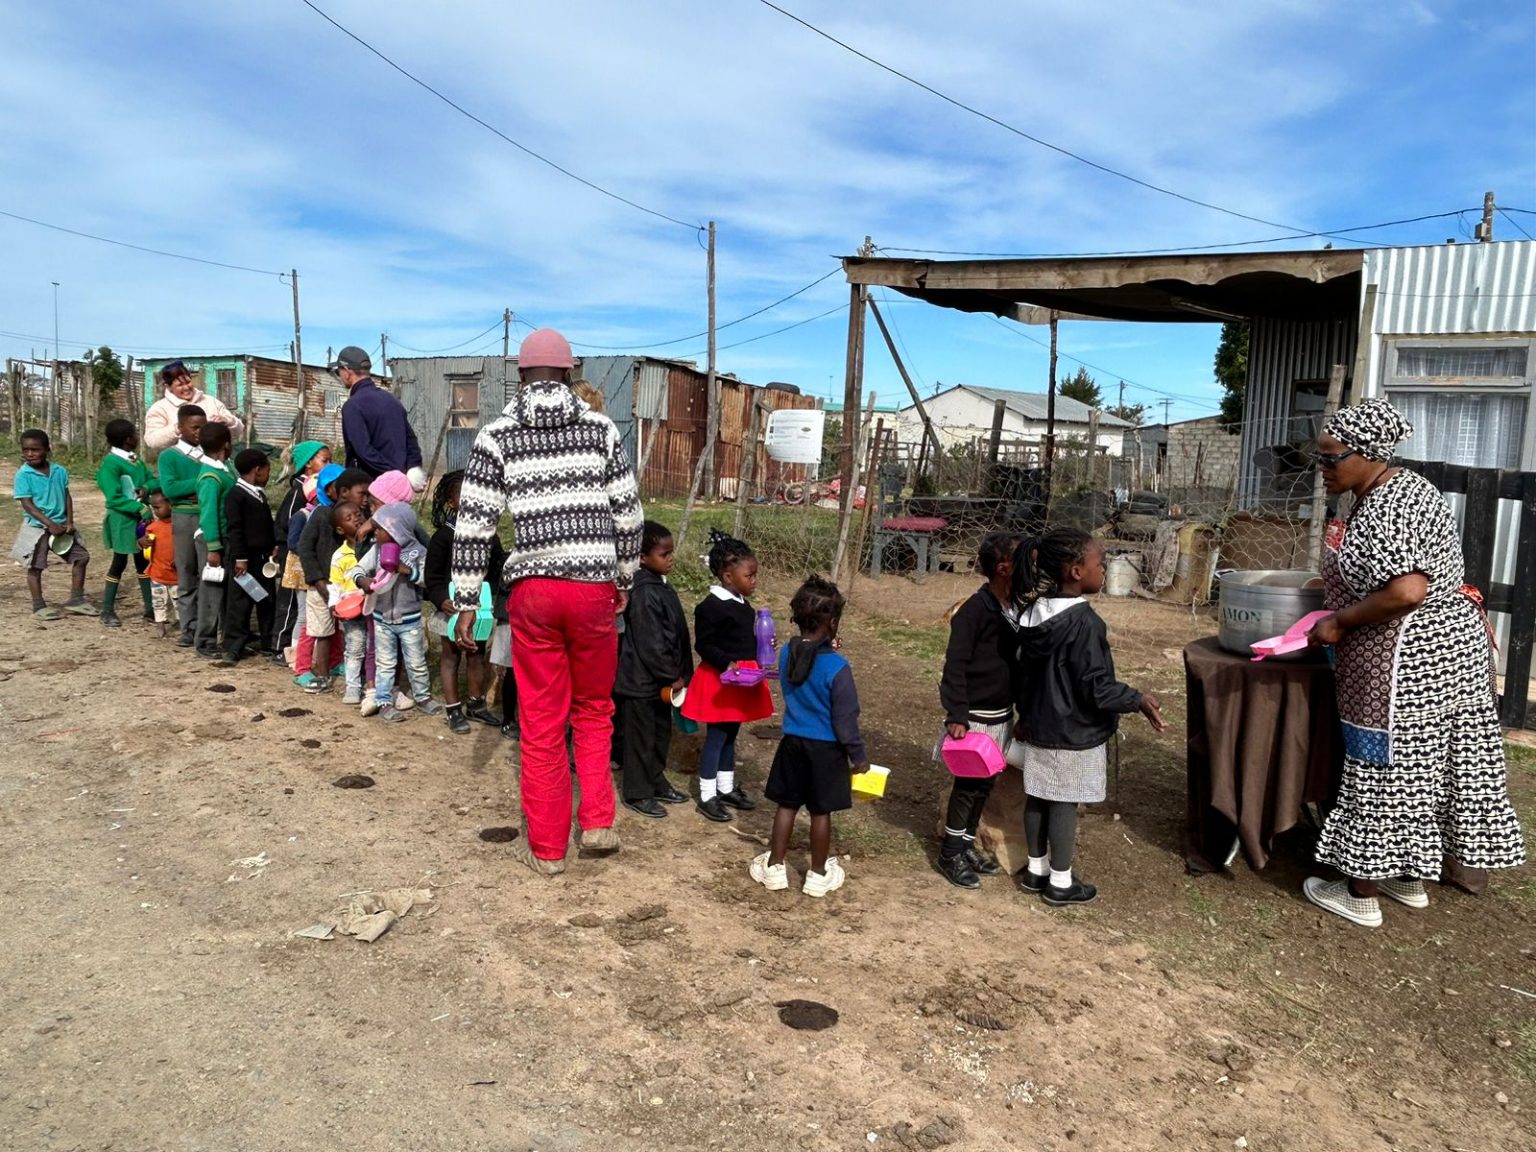 Limise Gagayi feeding the children. Photo: Mmathabo Maebela